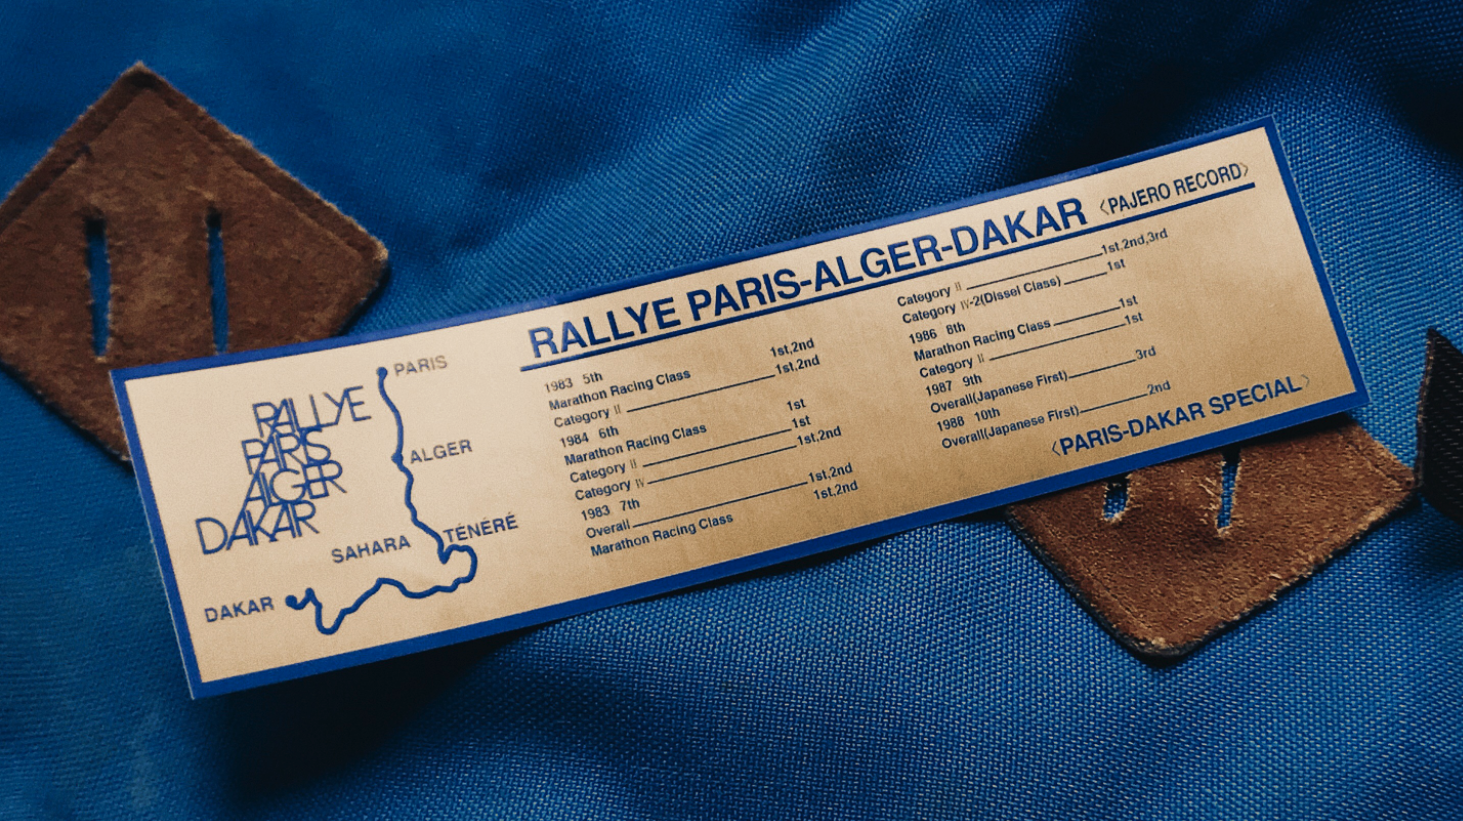 The 1988 Paris Dakar Edition Pajero stickers